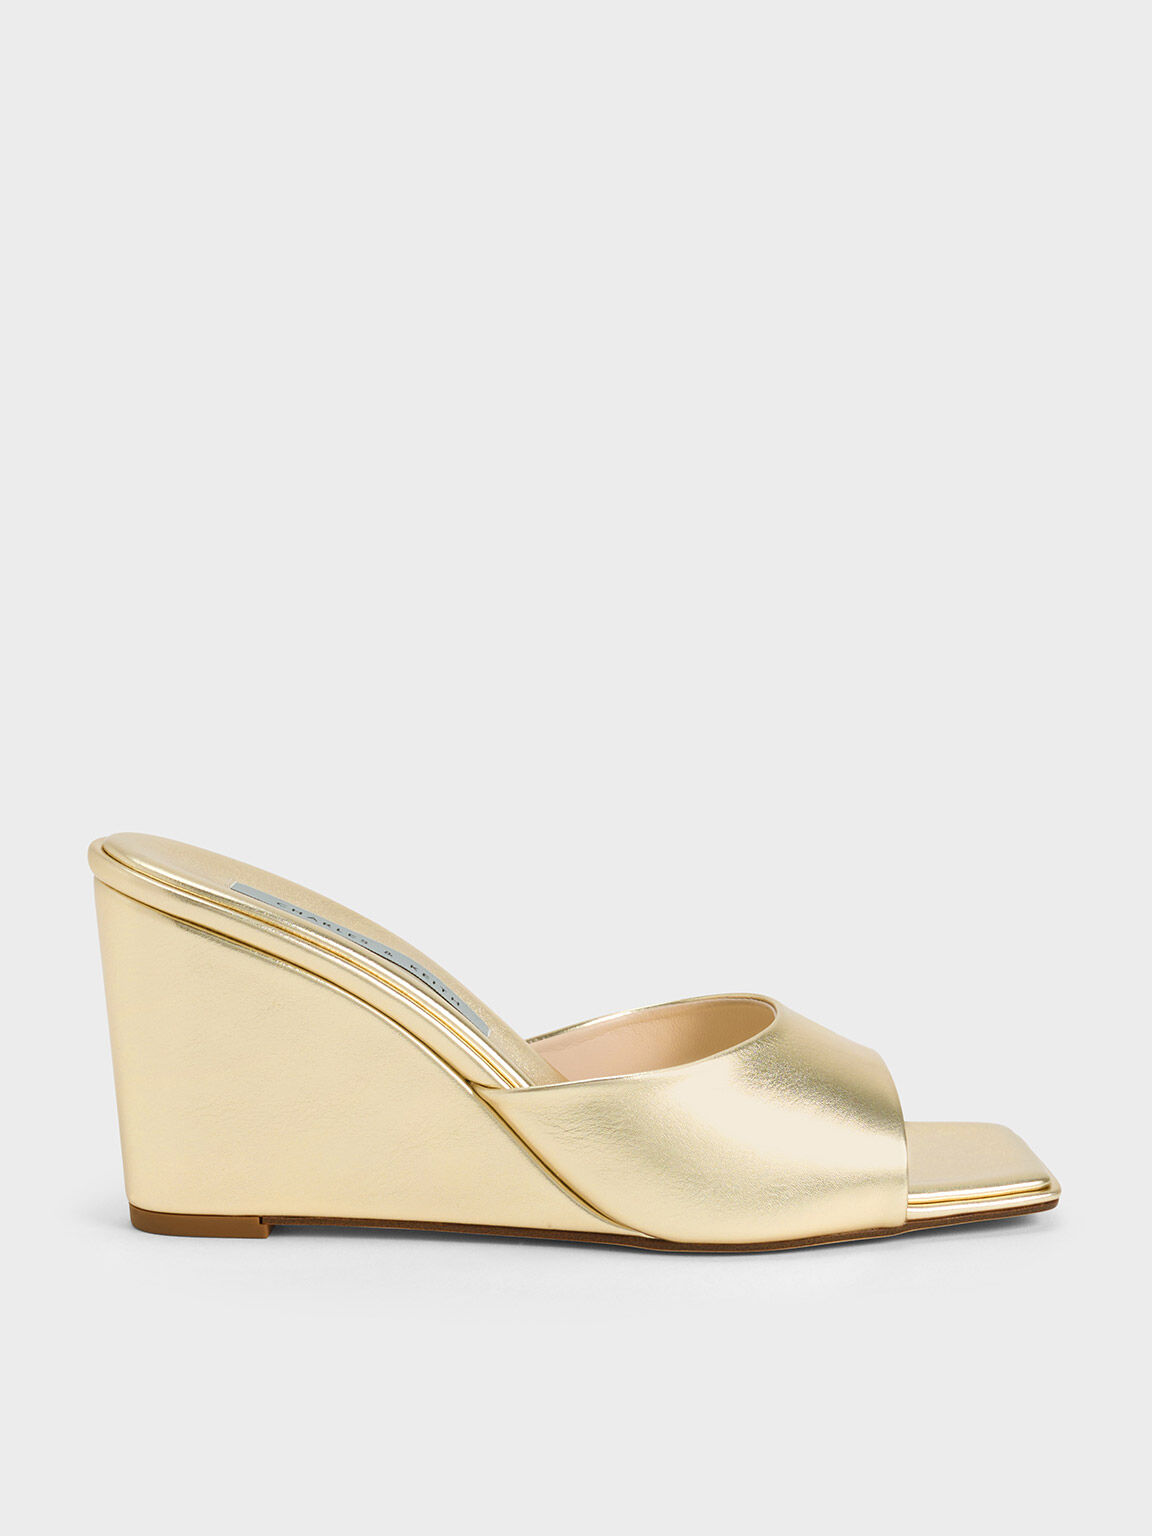 Sepatu Wedges Square-Toe Metallic, Gold, hi-res